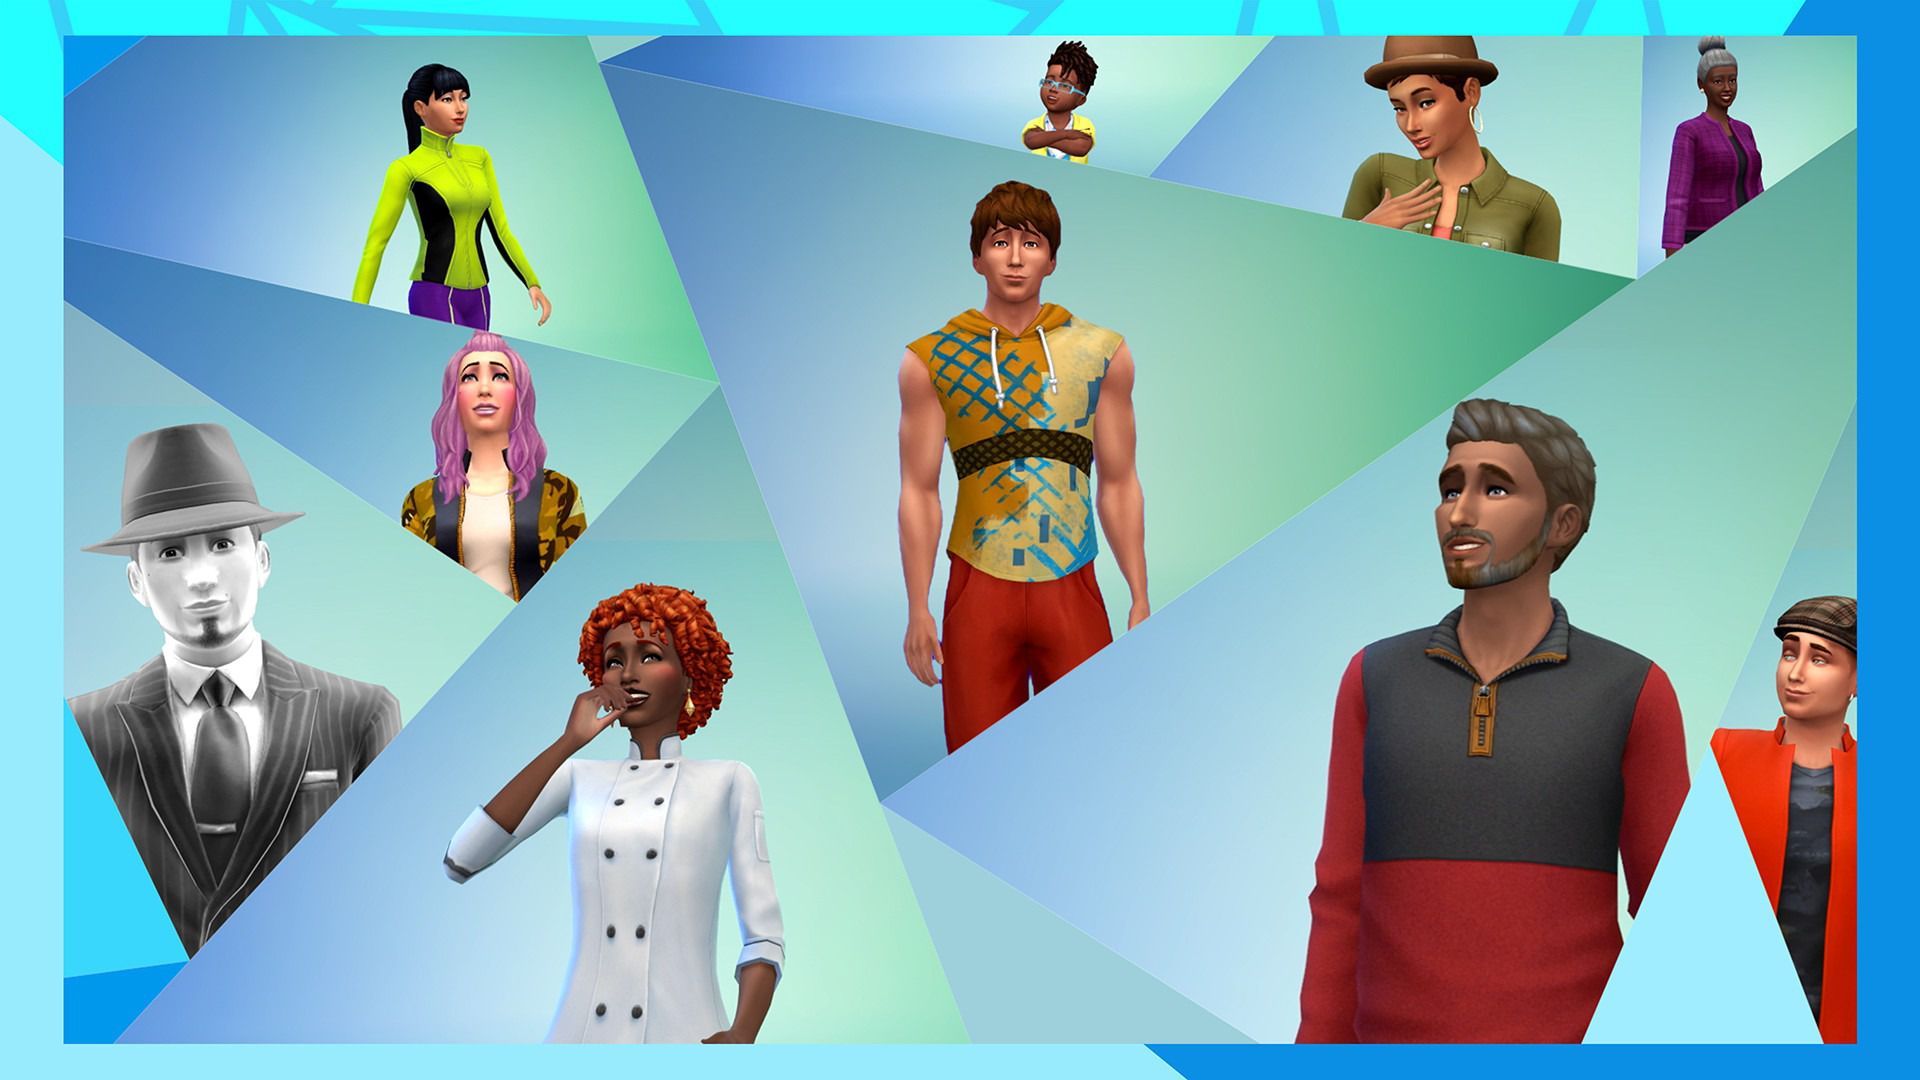 The Sims 4 pode ser jogado de graça na Origin por 48 horas